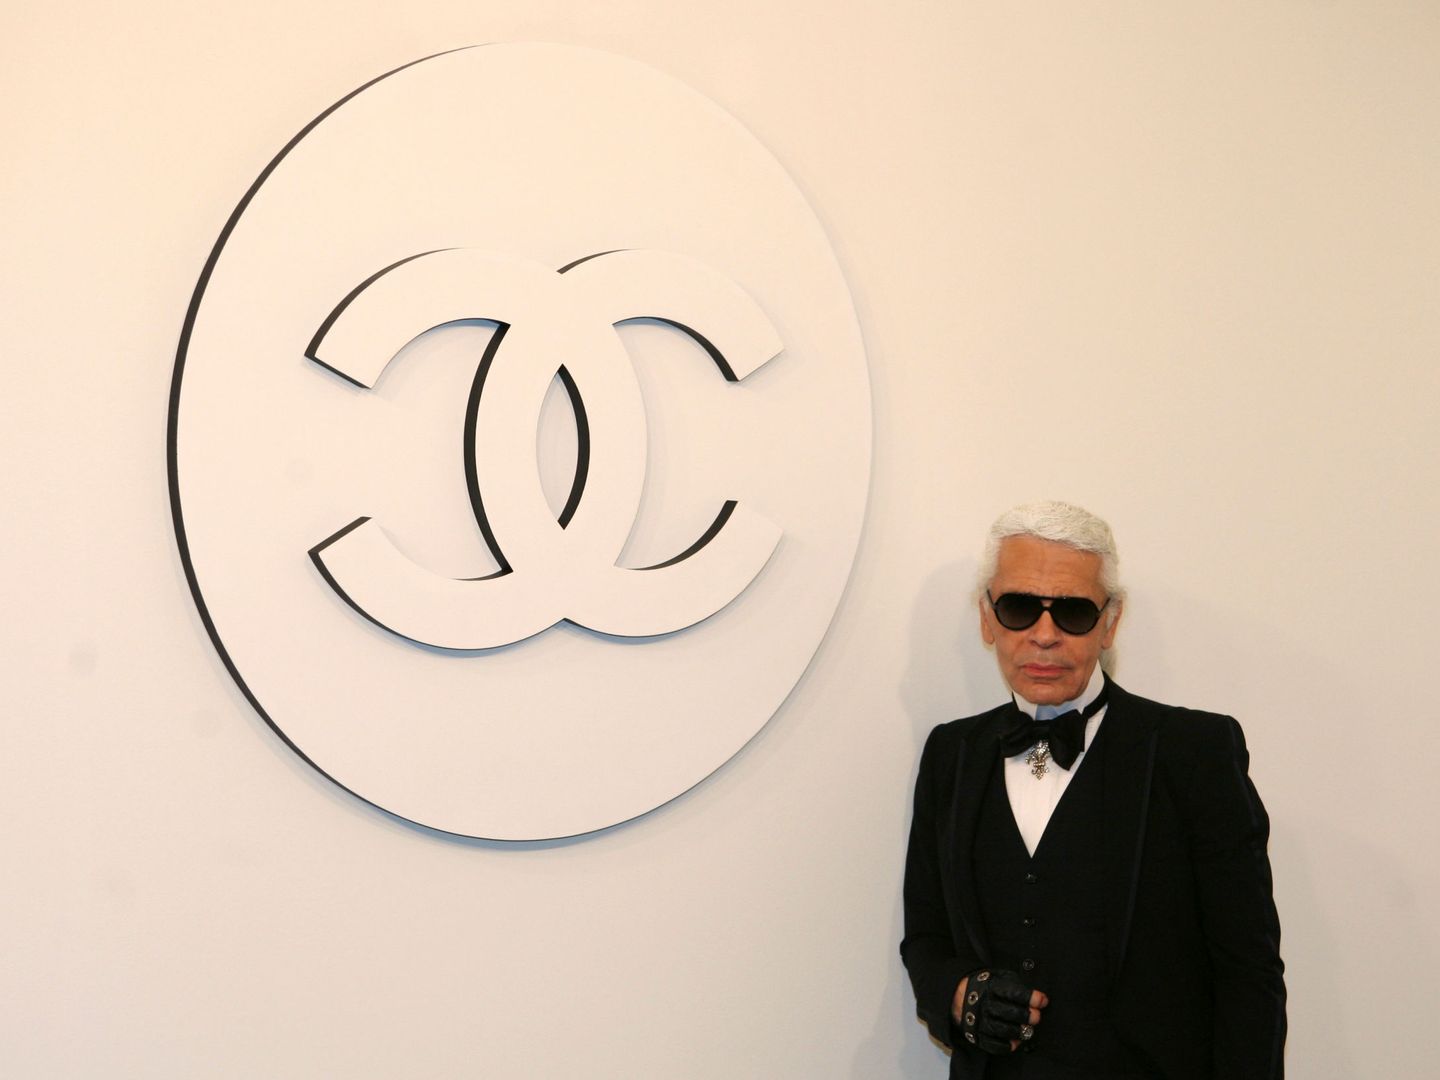 Karl Lagerfeld y Chanel siempre estarán unidos. (Reuters)